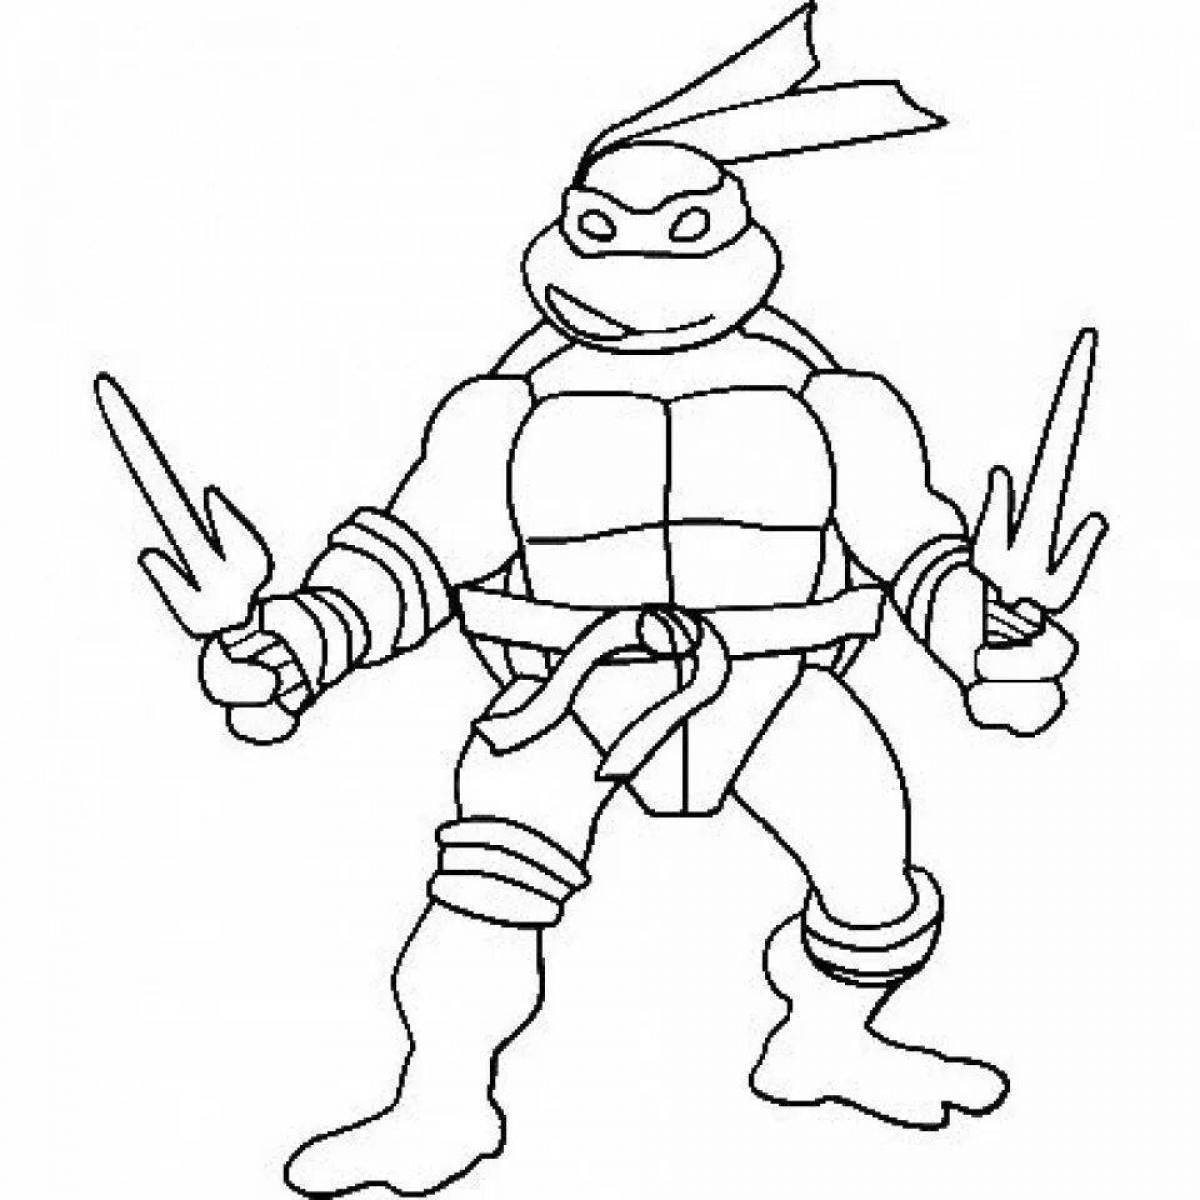 Impressive sketch of the Teenage Mutant Ninja Turtles